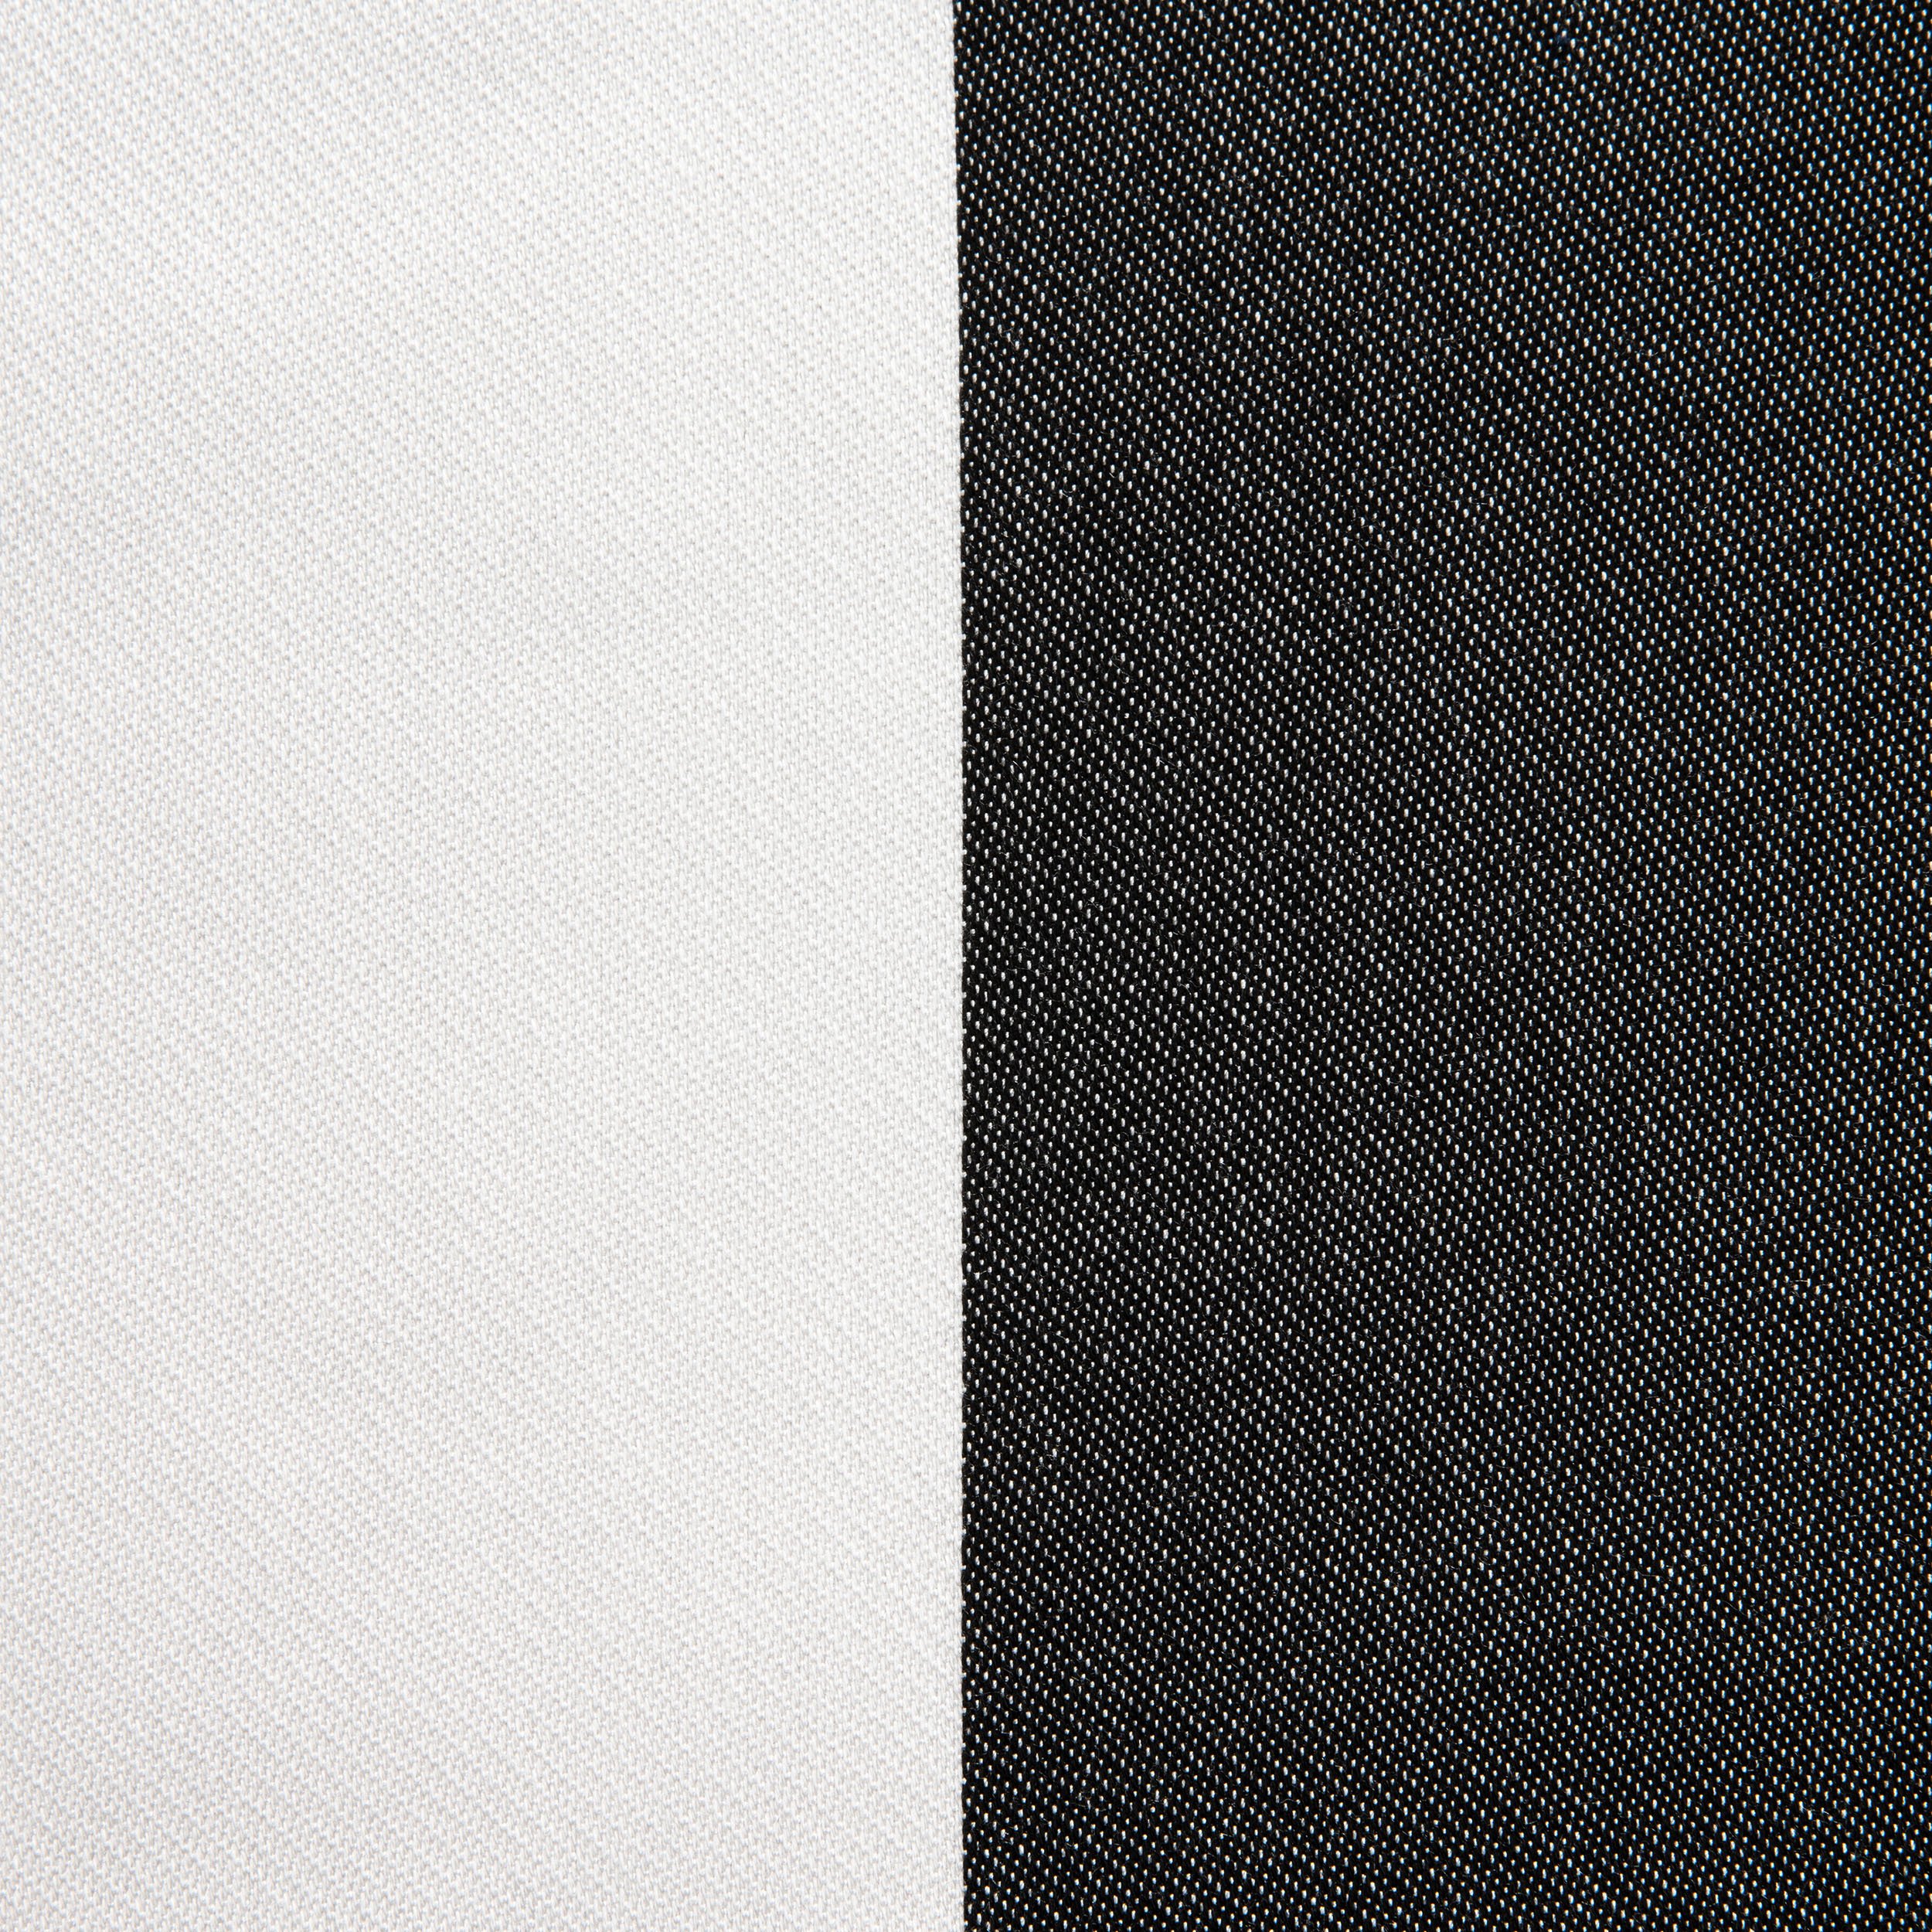 Plain Stripe Noir (1).jpg